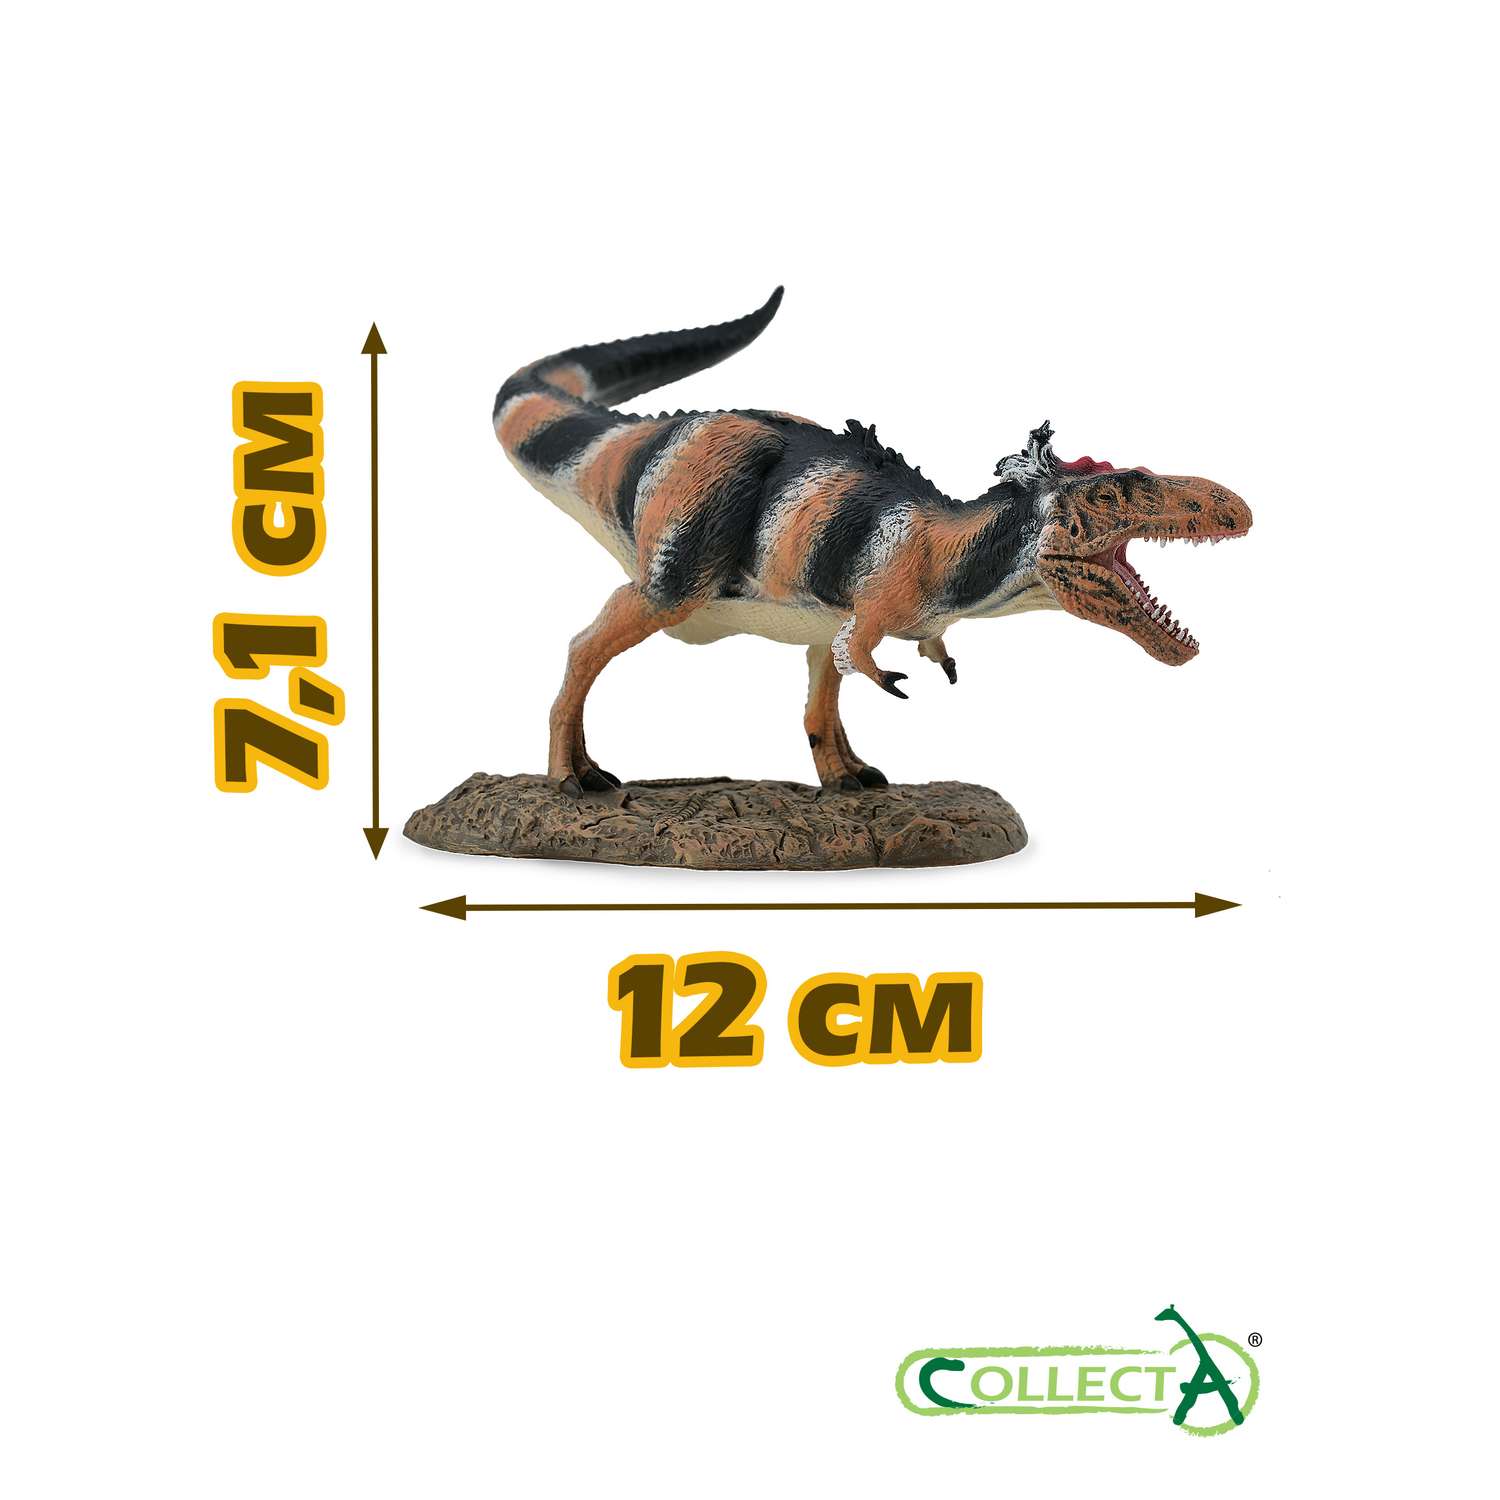 Игрушка Collecta Бистахиэверсор фигурка динозавра - фото 2